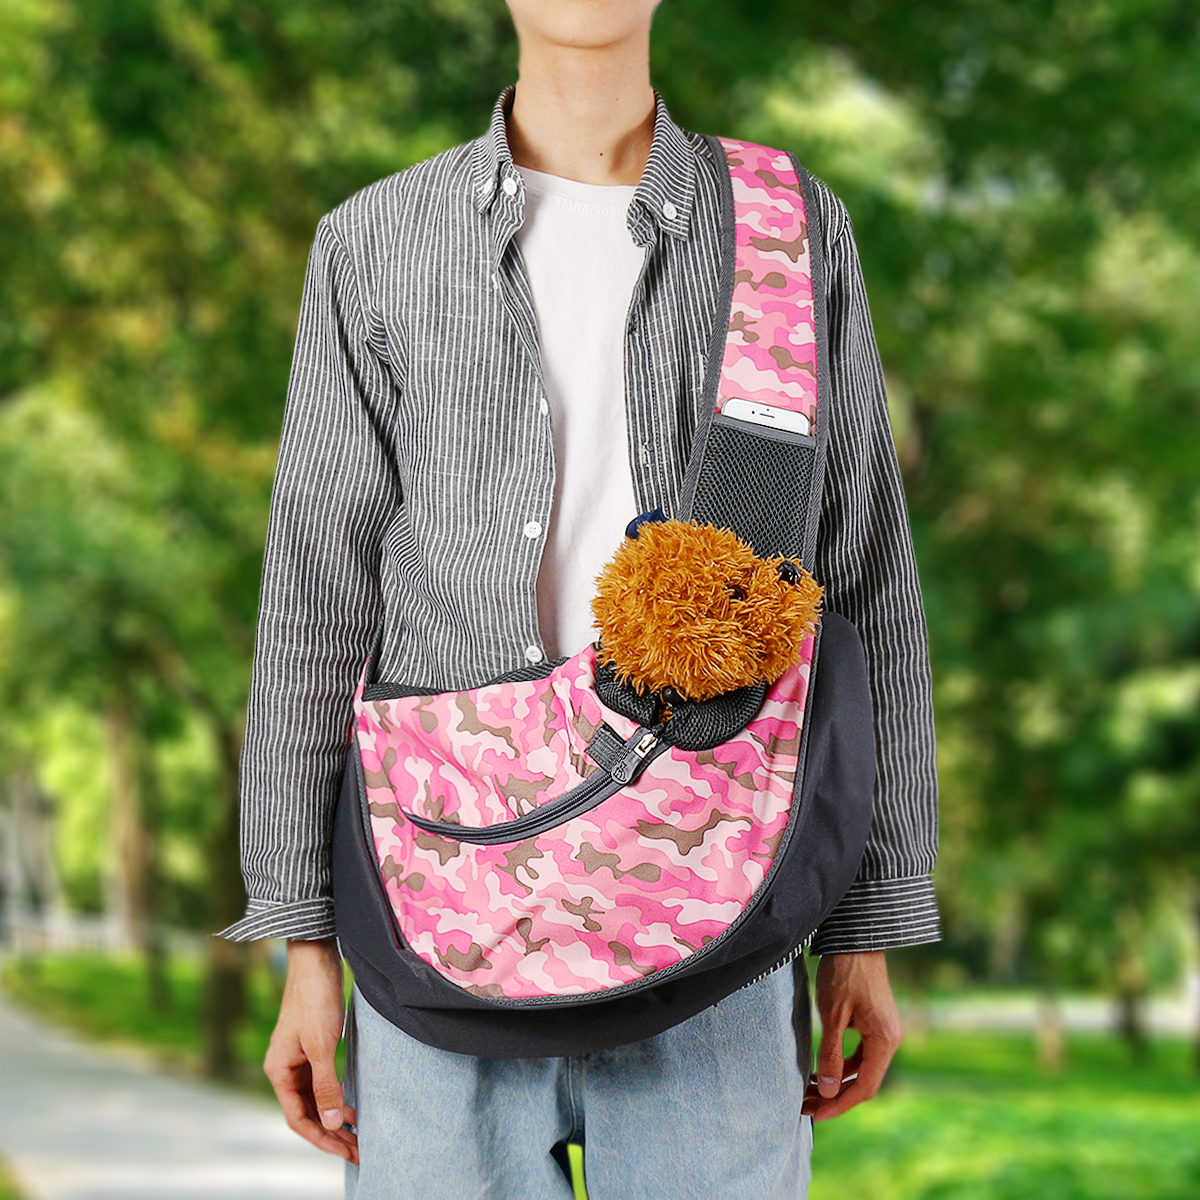 Outdoor-Pet-Carrier-Bag-Breathable-Dog-Cat-Puppy-Bag-Outdoor-Shoulder-Travel-Bag-1556933-10